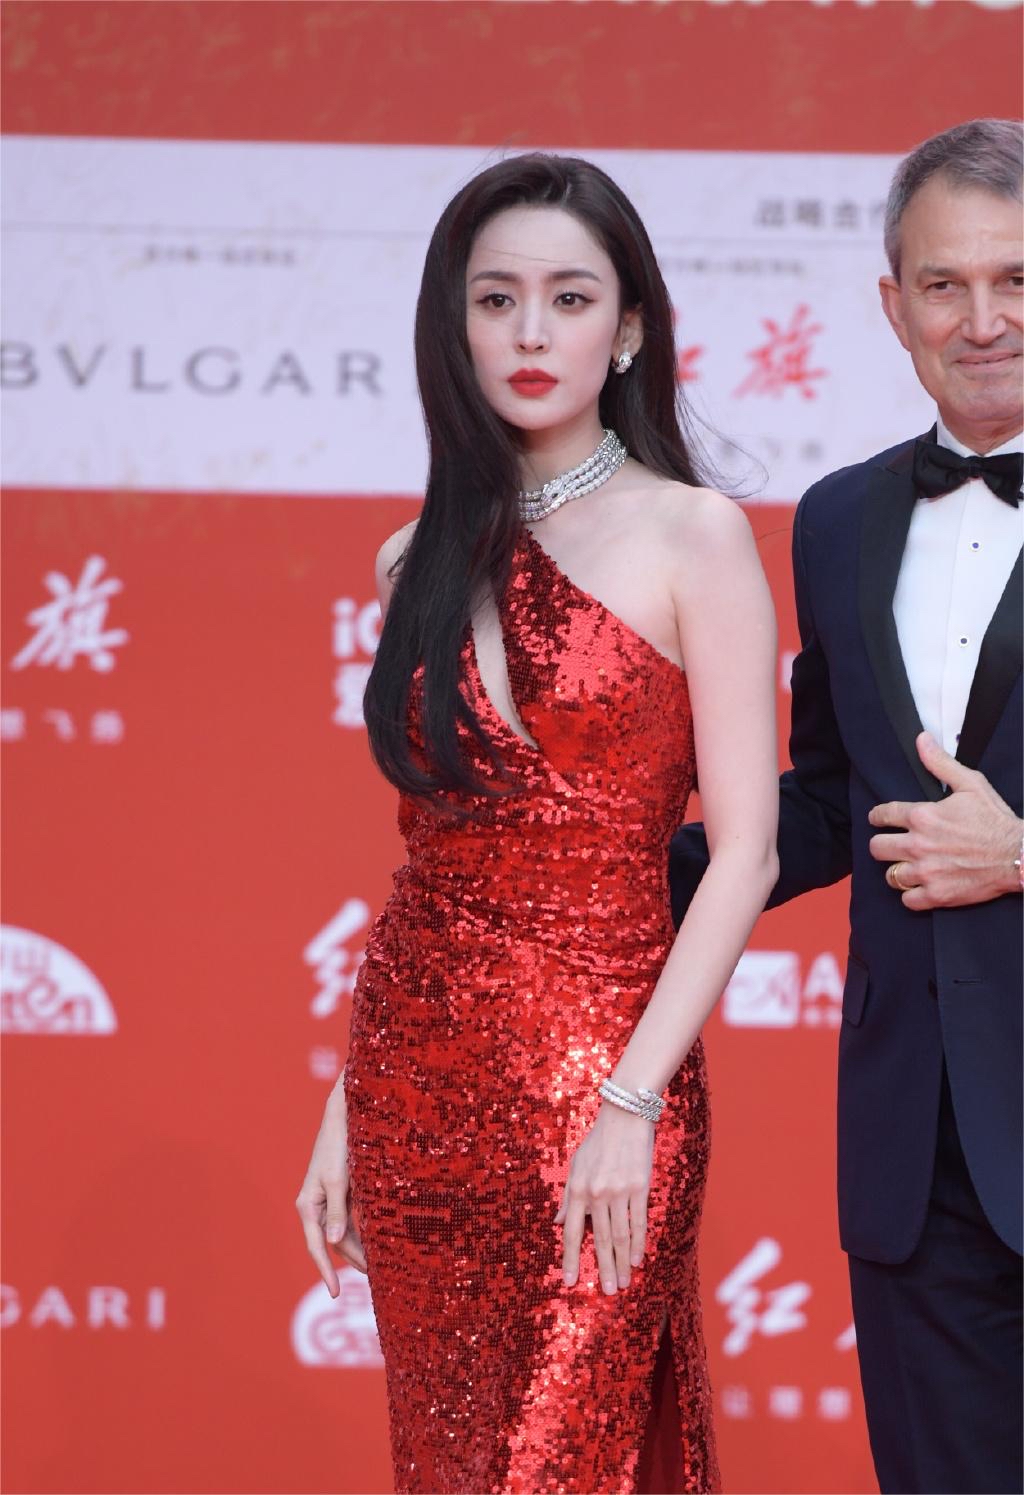 日前,第十三届北京国际电影节正在举行,各大女星们的红毯生图照,一